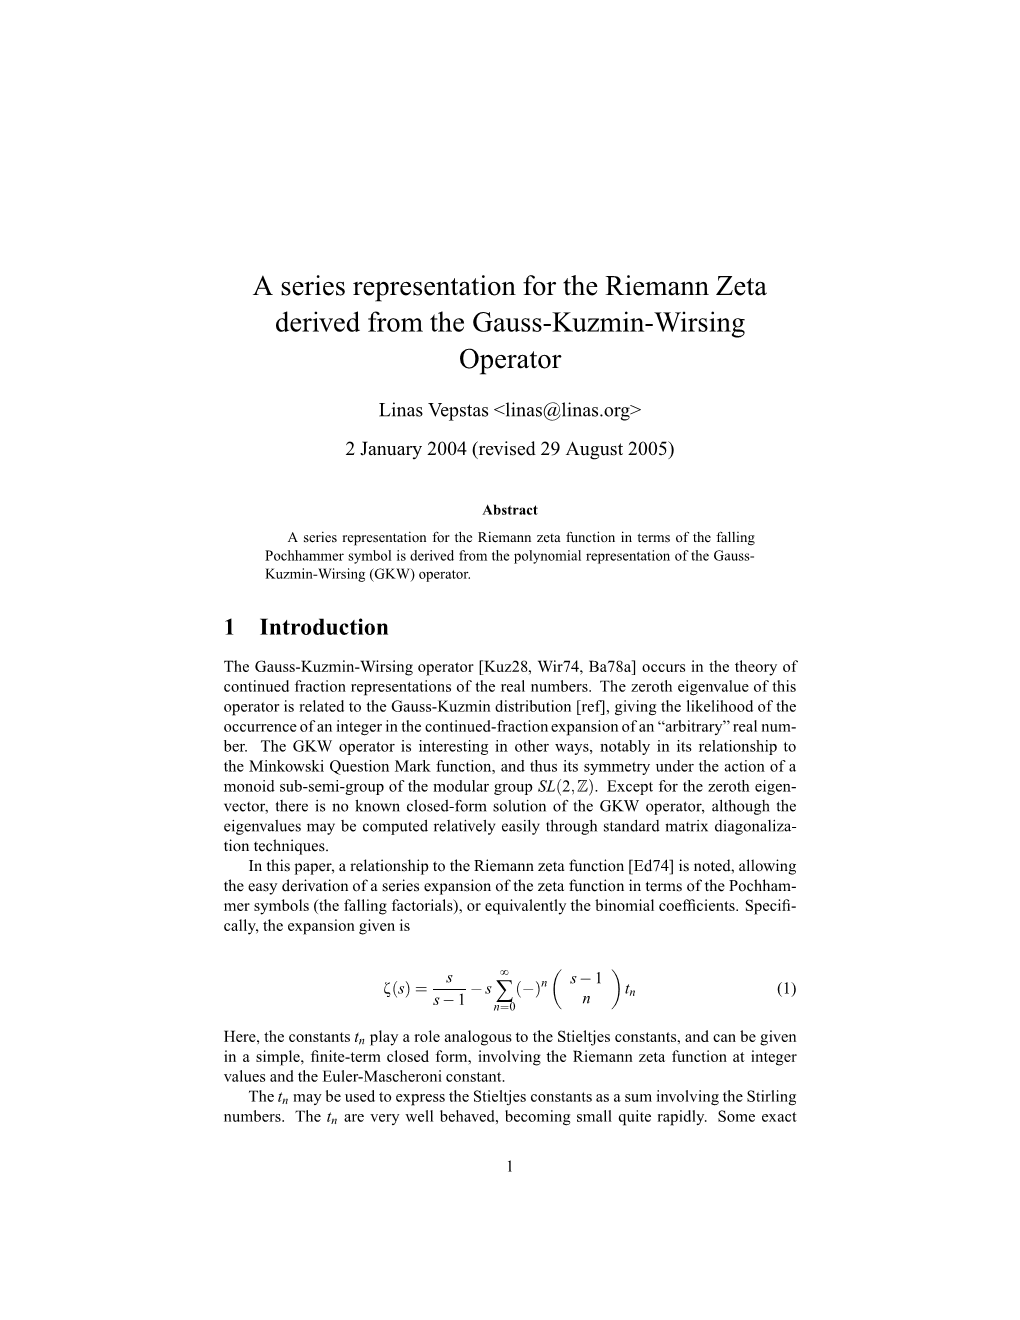 A Series Representation for the Riemann Zeta Derived from the Gauss-Kuzmin-Wirsing Operator